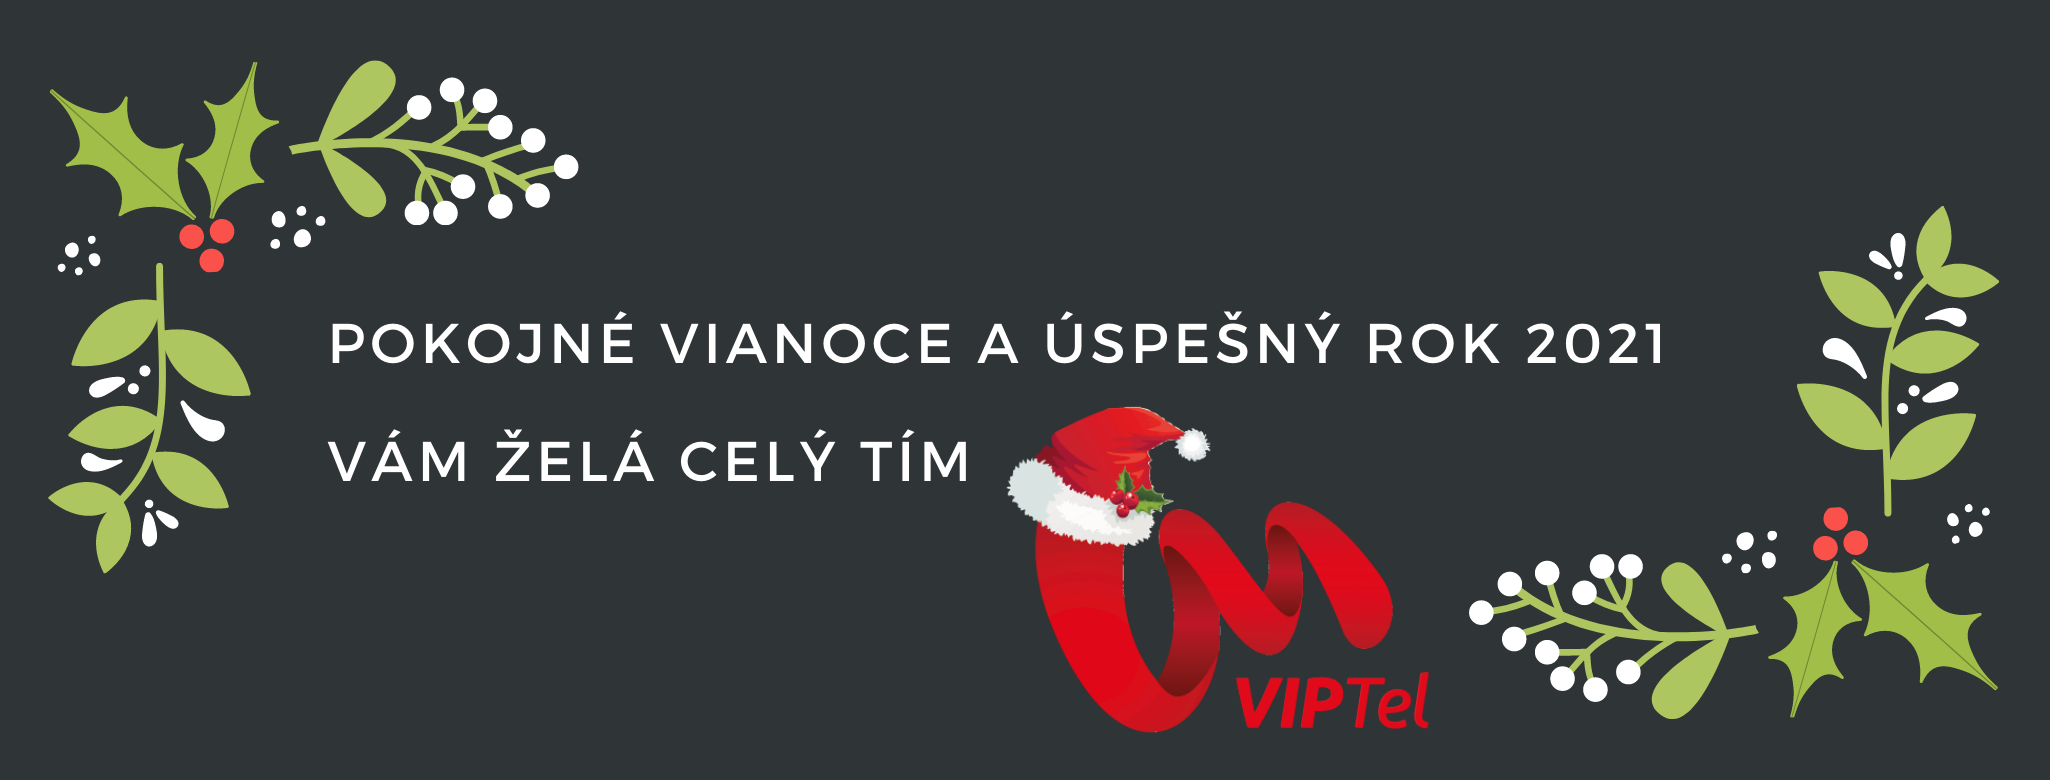 Pokojné Vianoce s VIPTelom